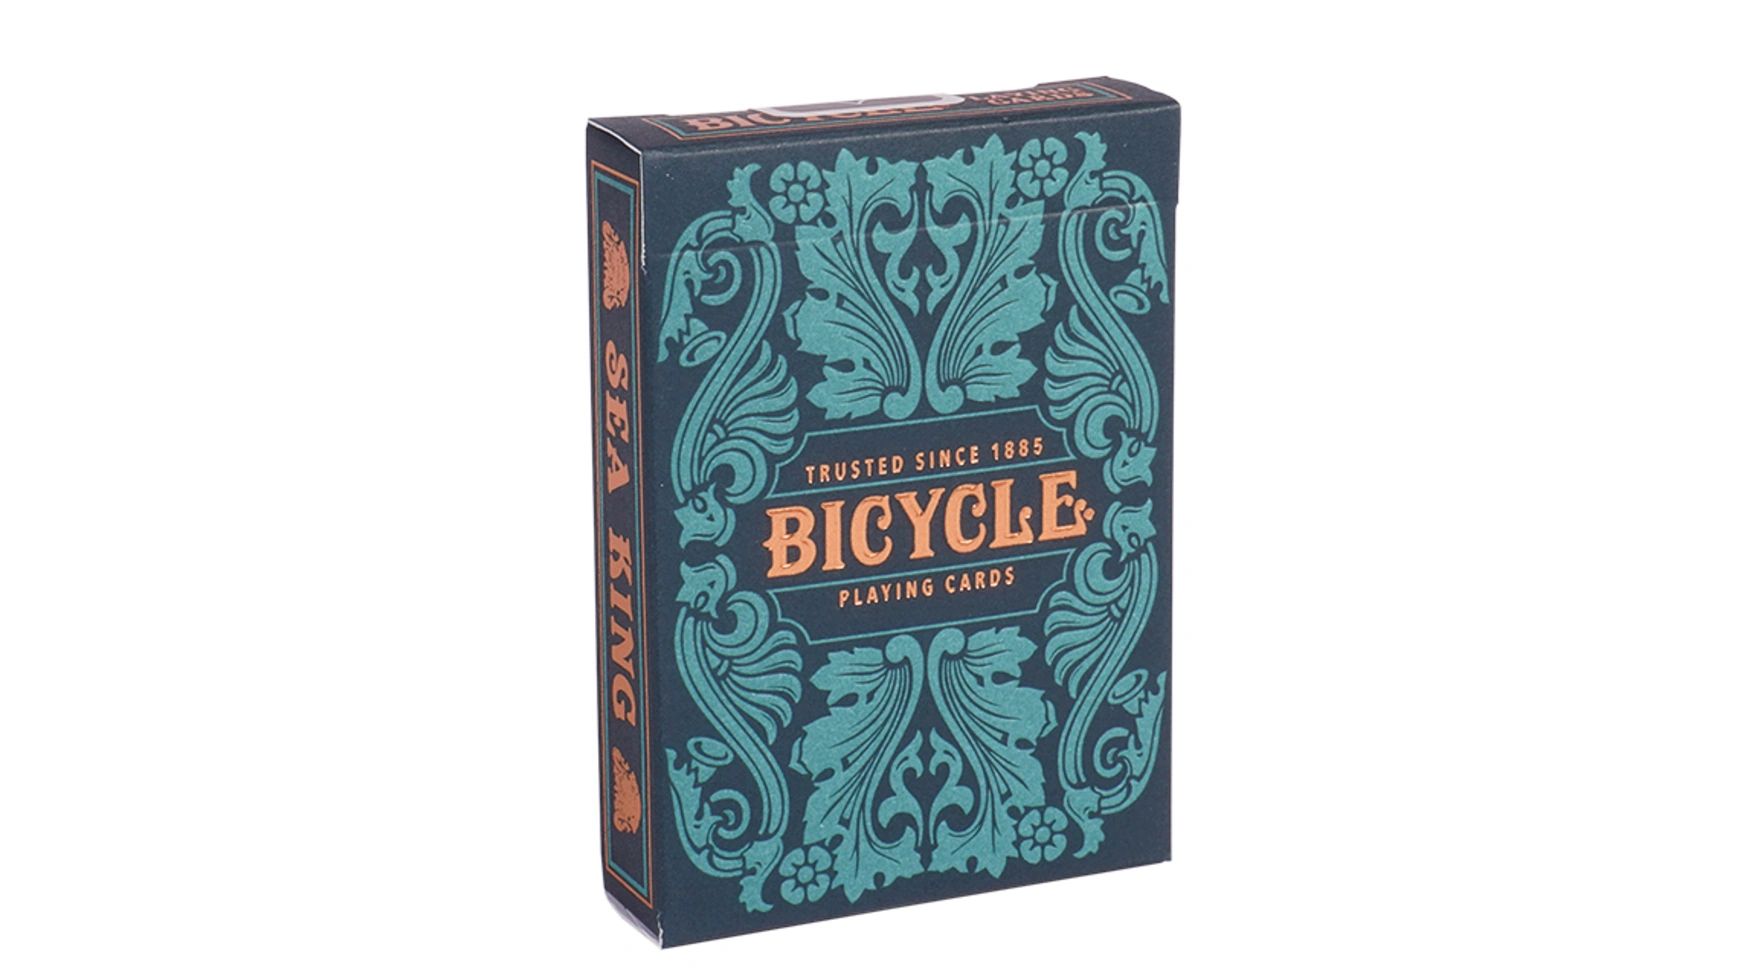 Bicycle Морской король, игральные карты bicycle карты bicycle arch angels